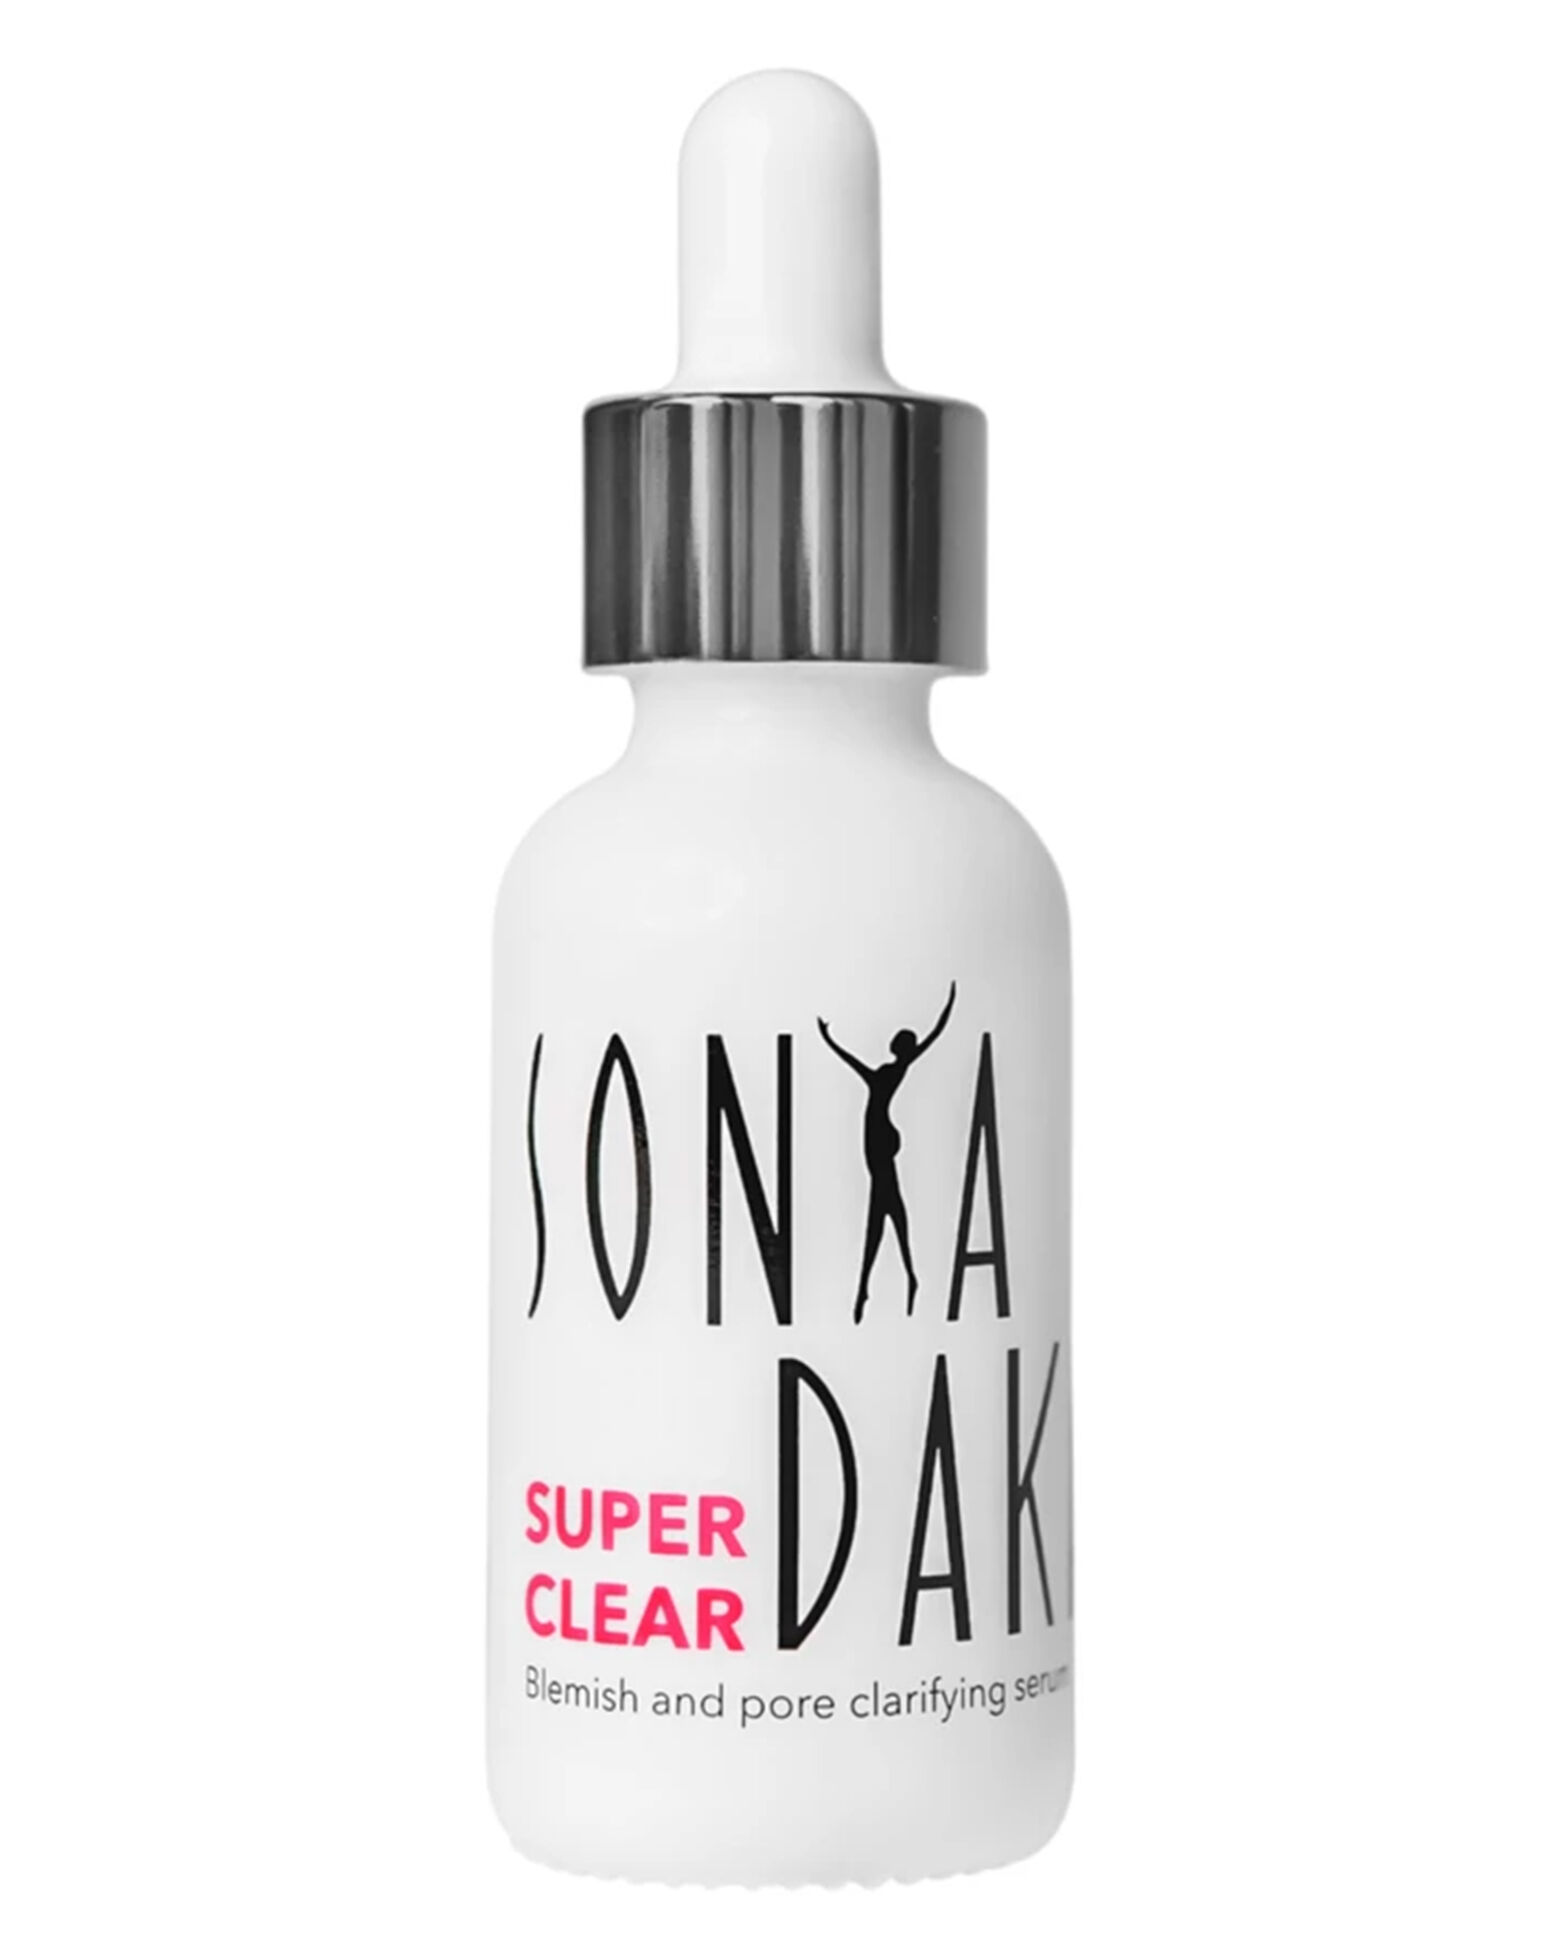 Sonya Dakar - Super Clear